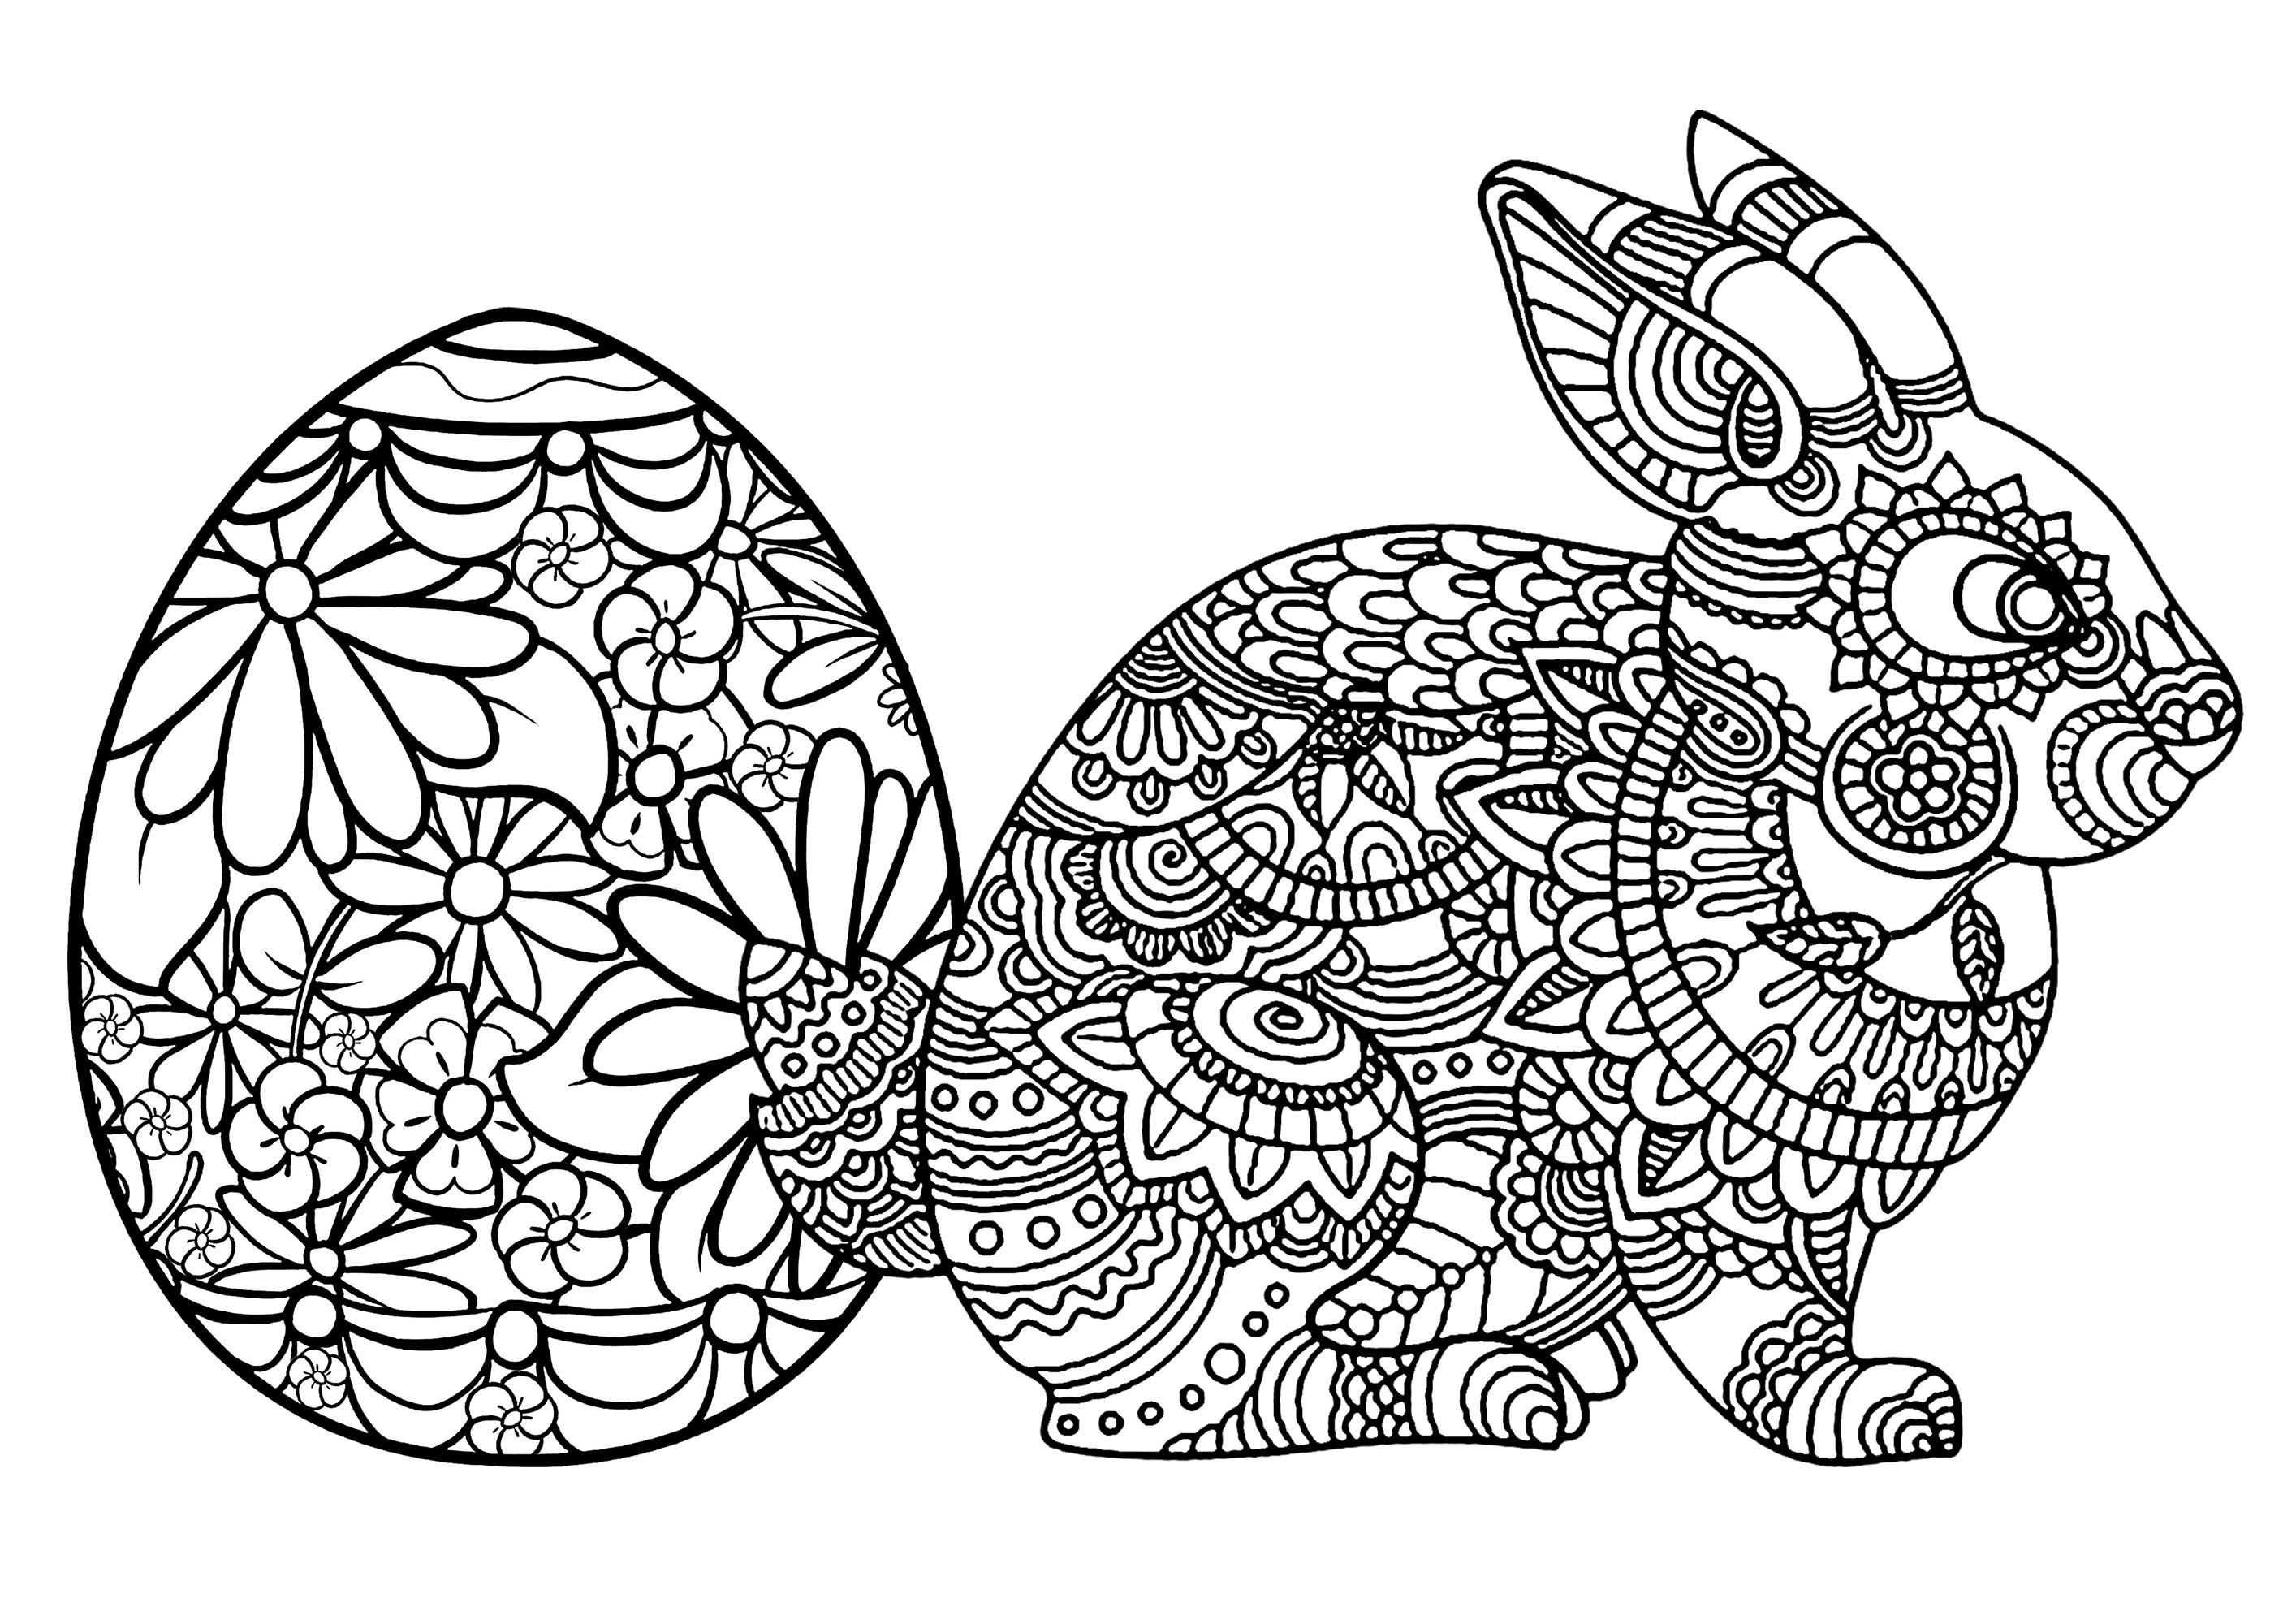 Huevo de Pascua y conejo. Muchos detalles para colorear en los dos temas de esta bonita página para colorear, Artista : Art'Isabelle